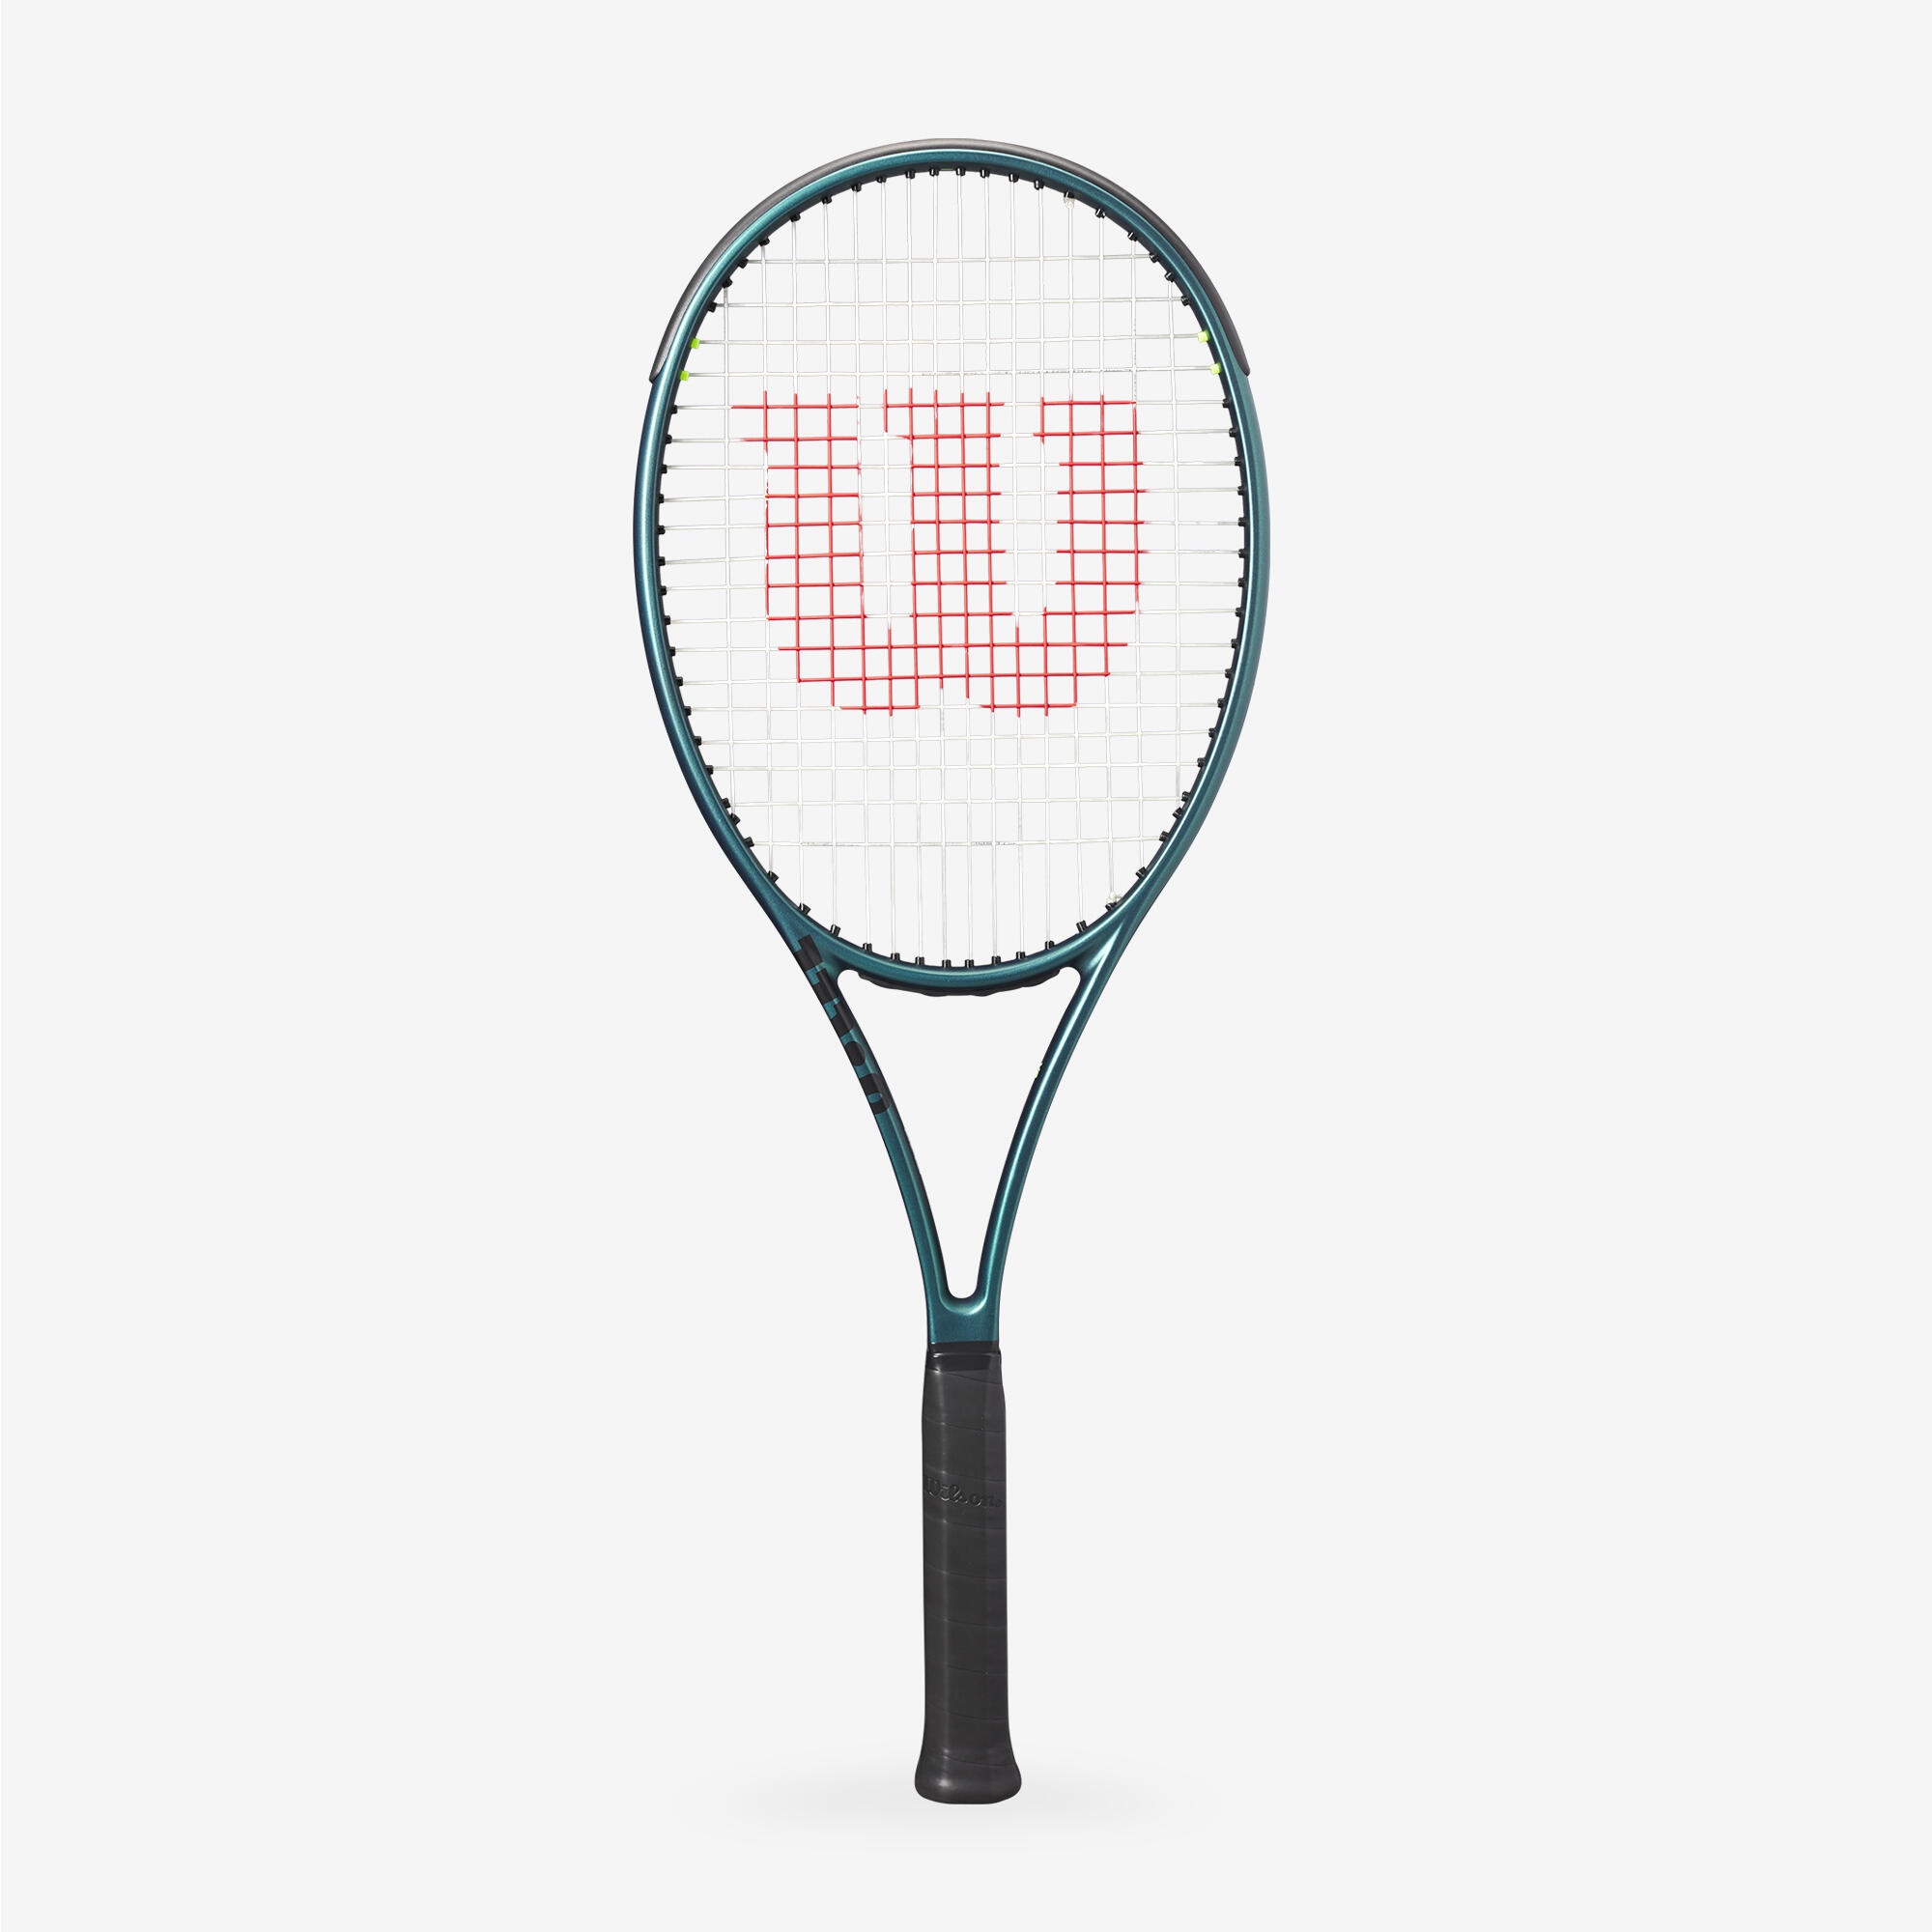 WILSON Adult Tennis Racket 98 16x19 V9 305g Unstrung - Green